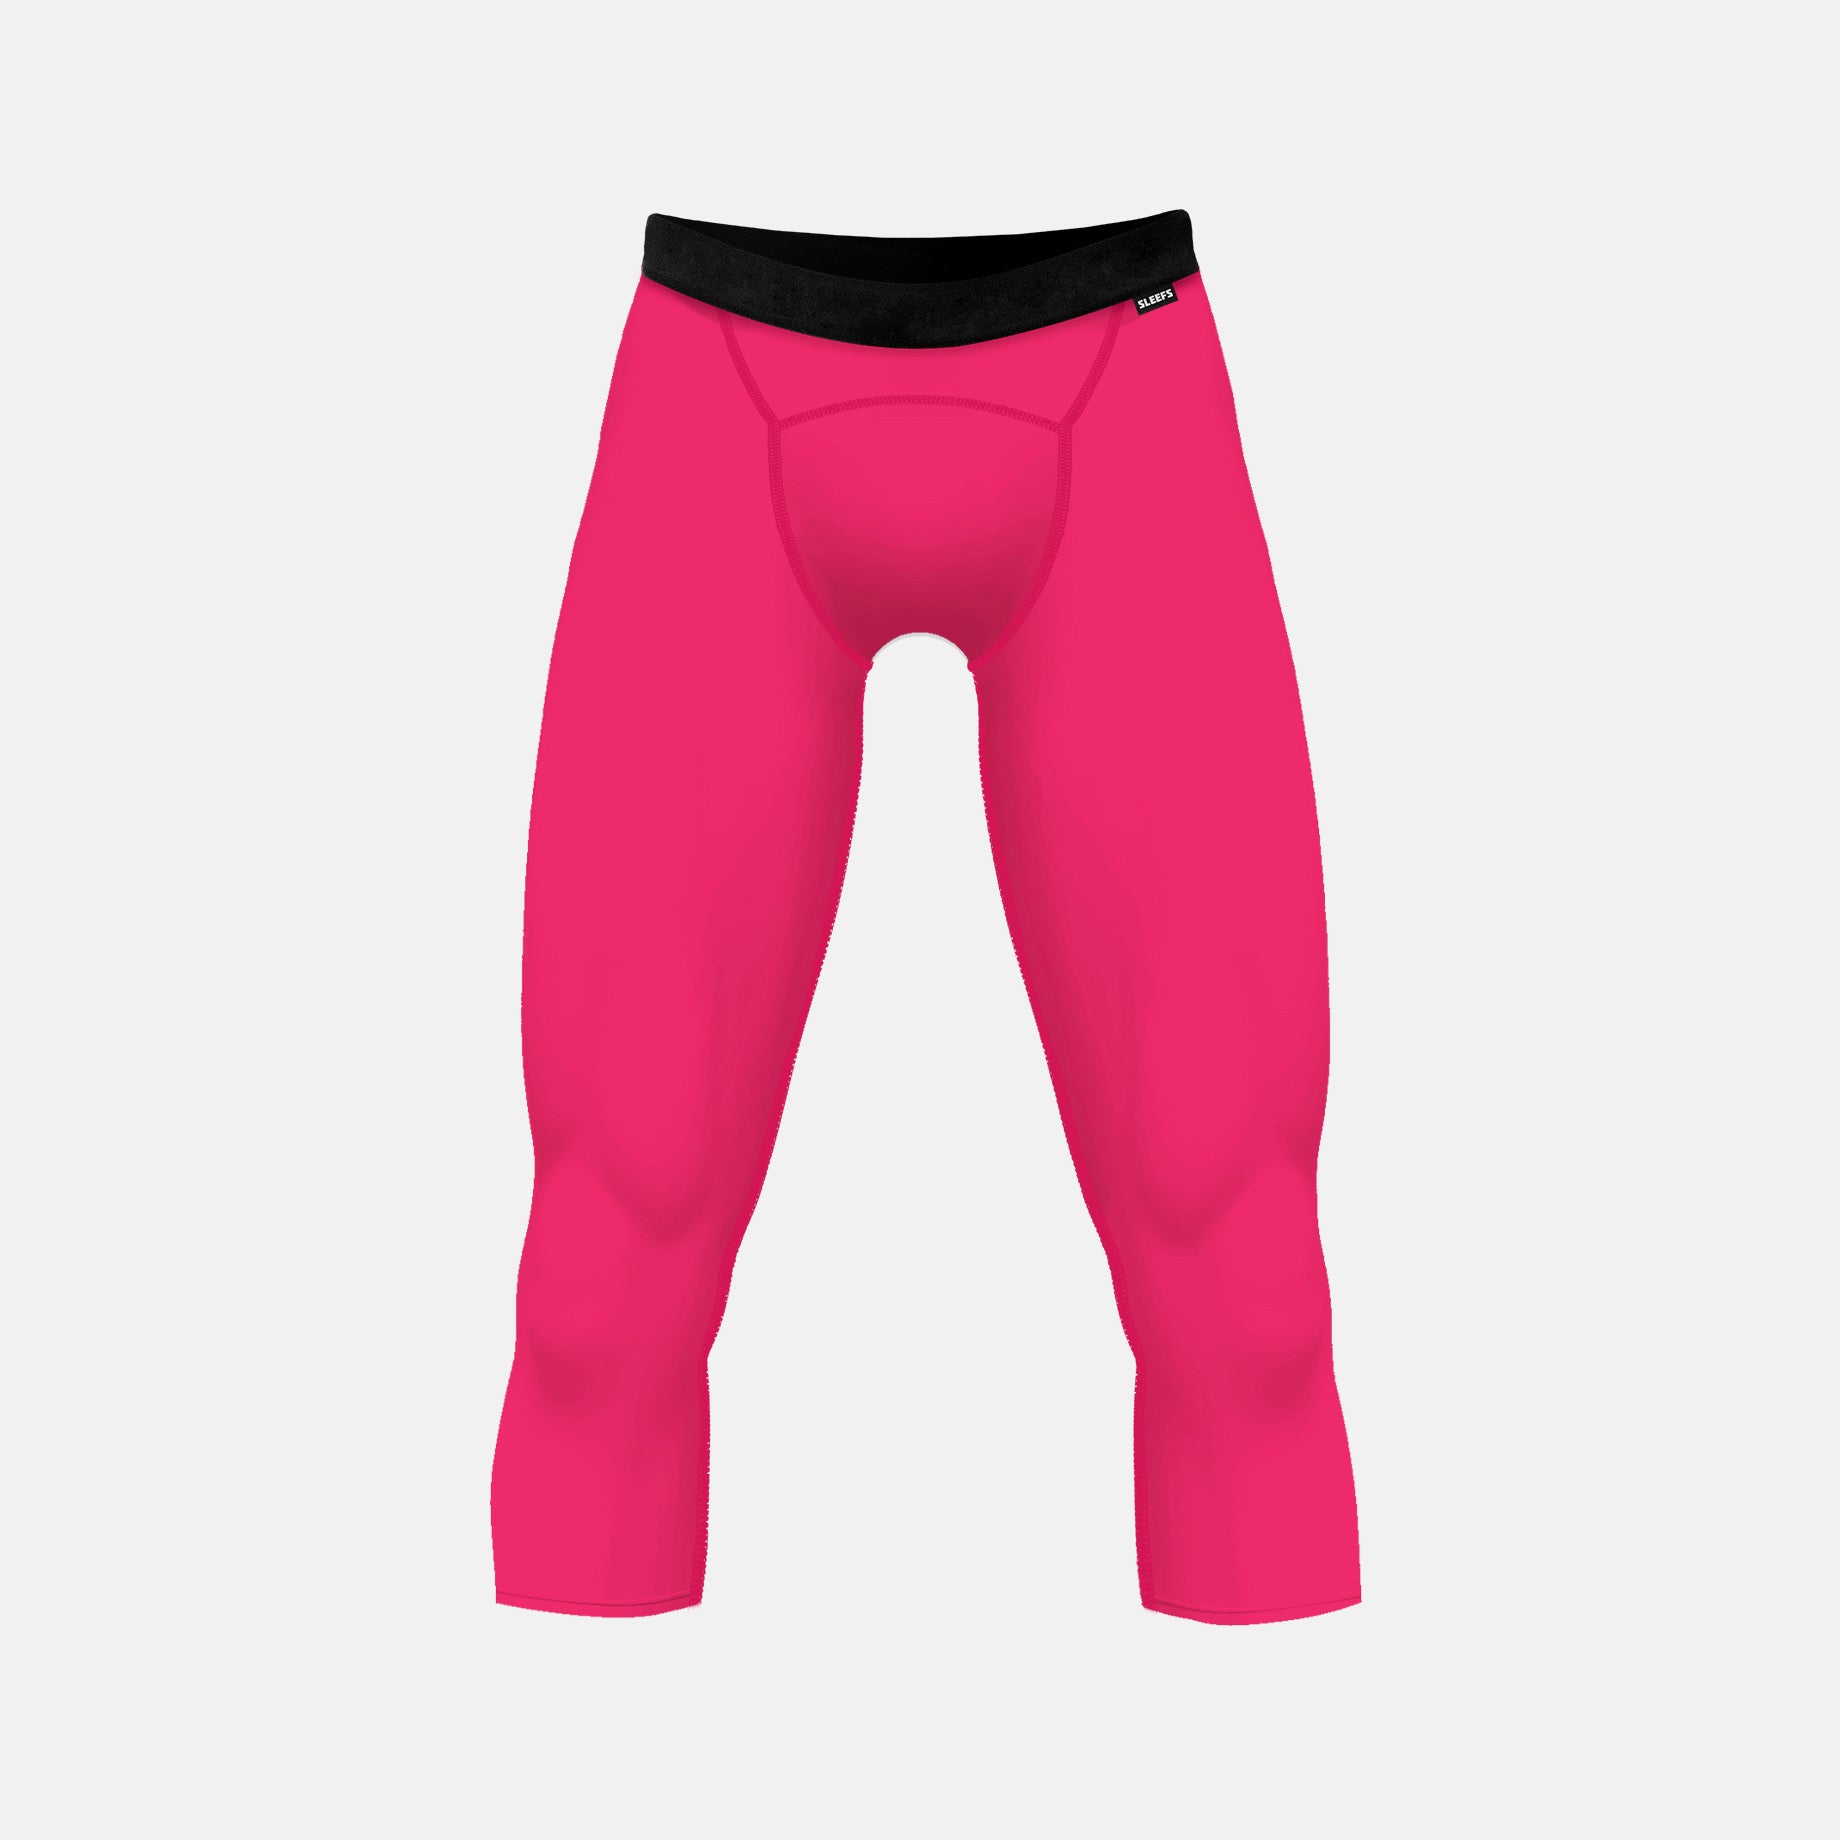 pink football tights